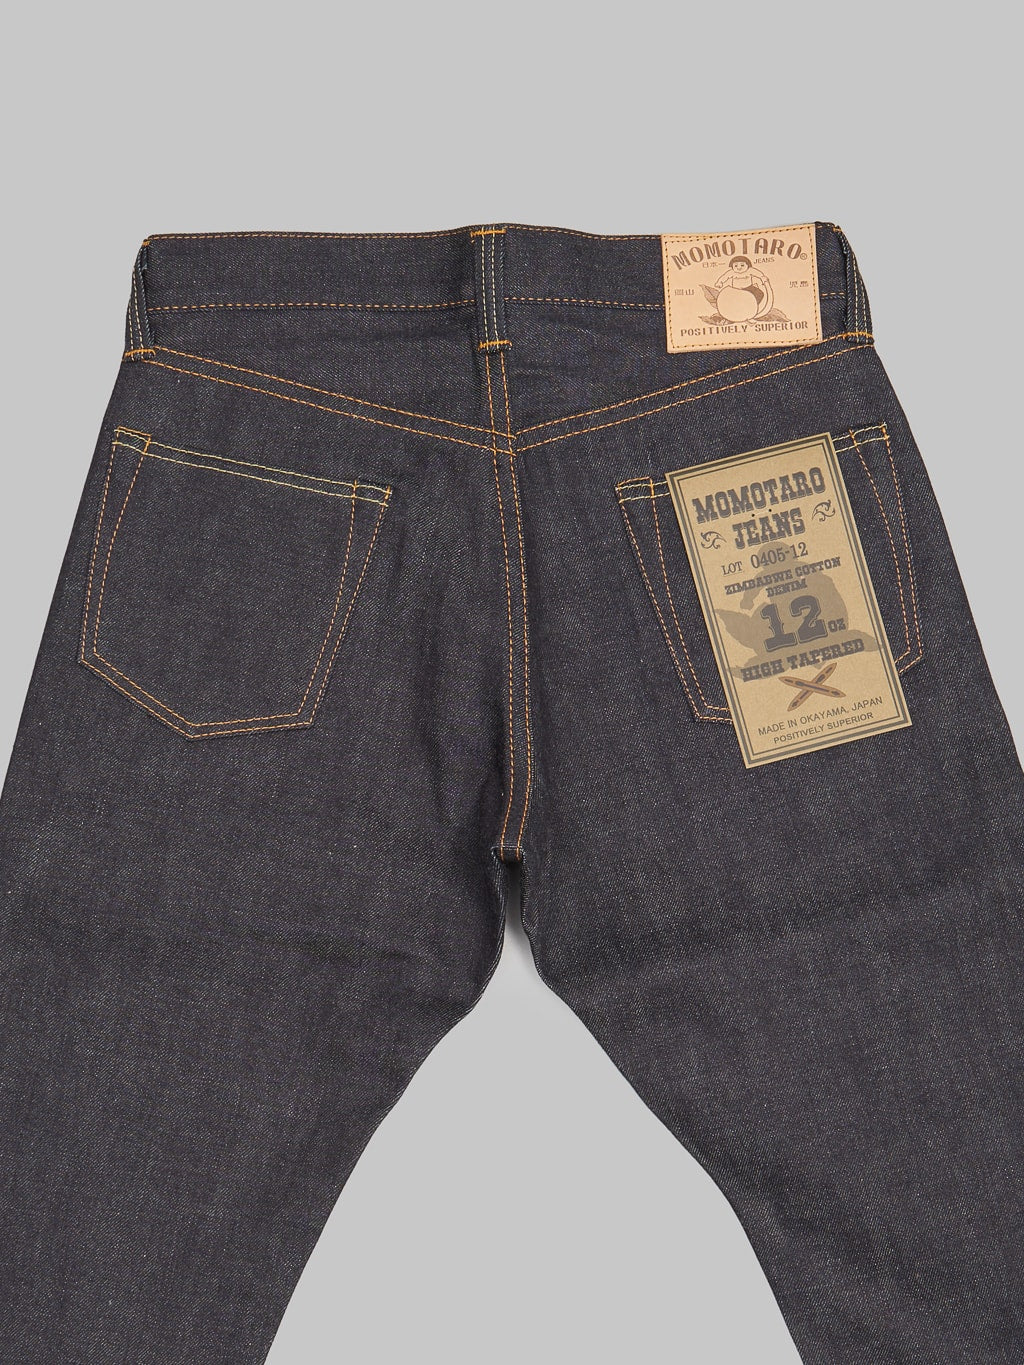 Momotaro 0405 12oz high Tapered Jeans  back details